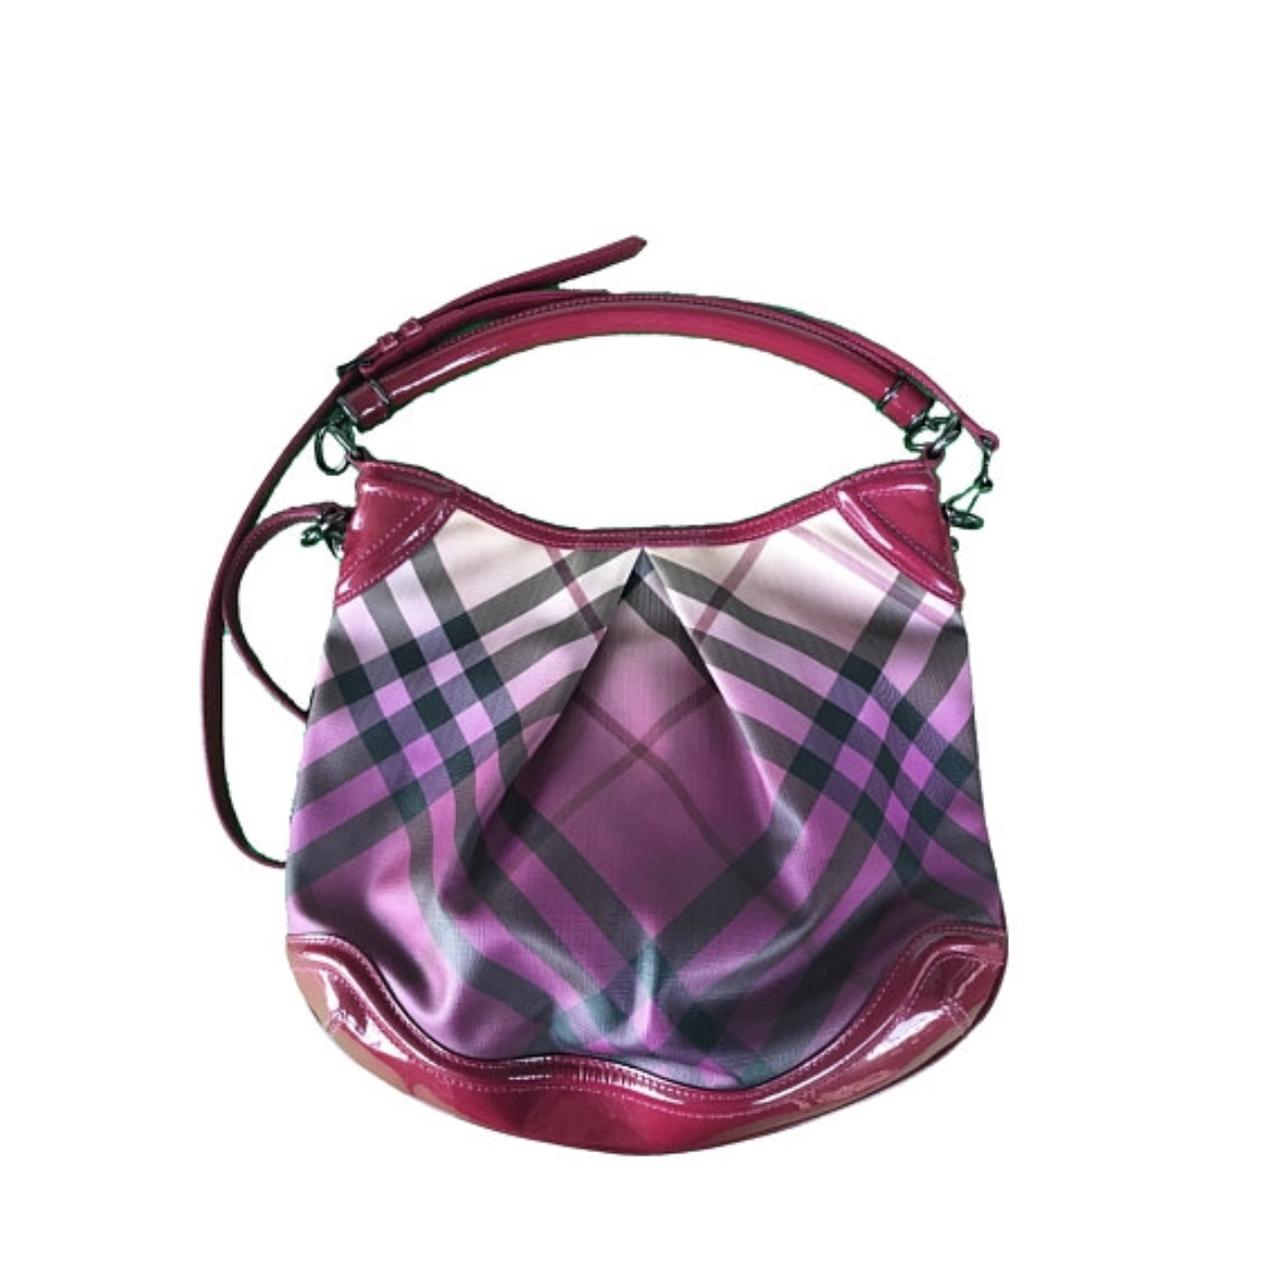 Burberry, Bags, Burberry Nova Check Pink Ombr Shoulder Bag